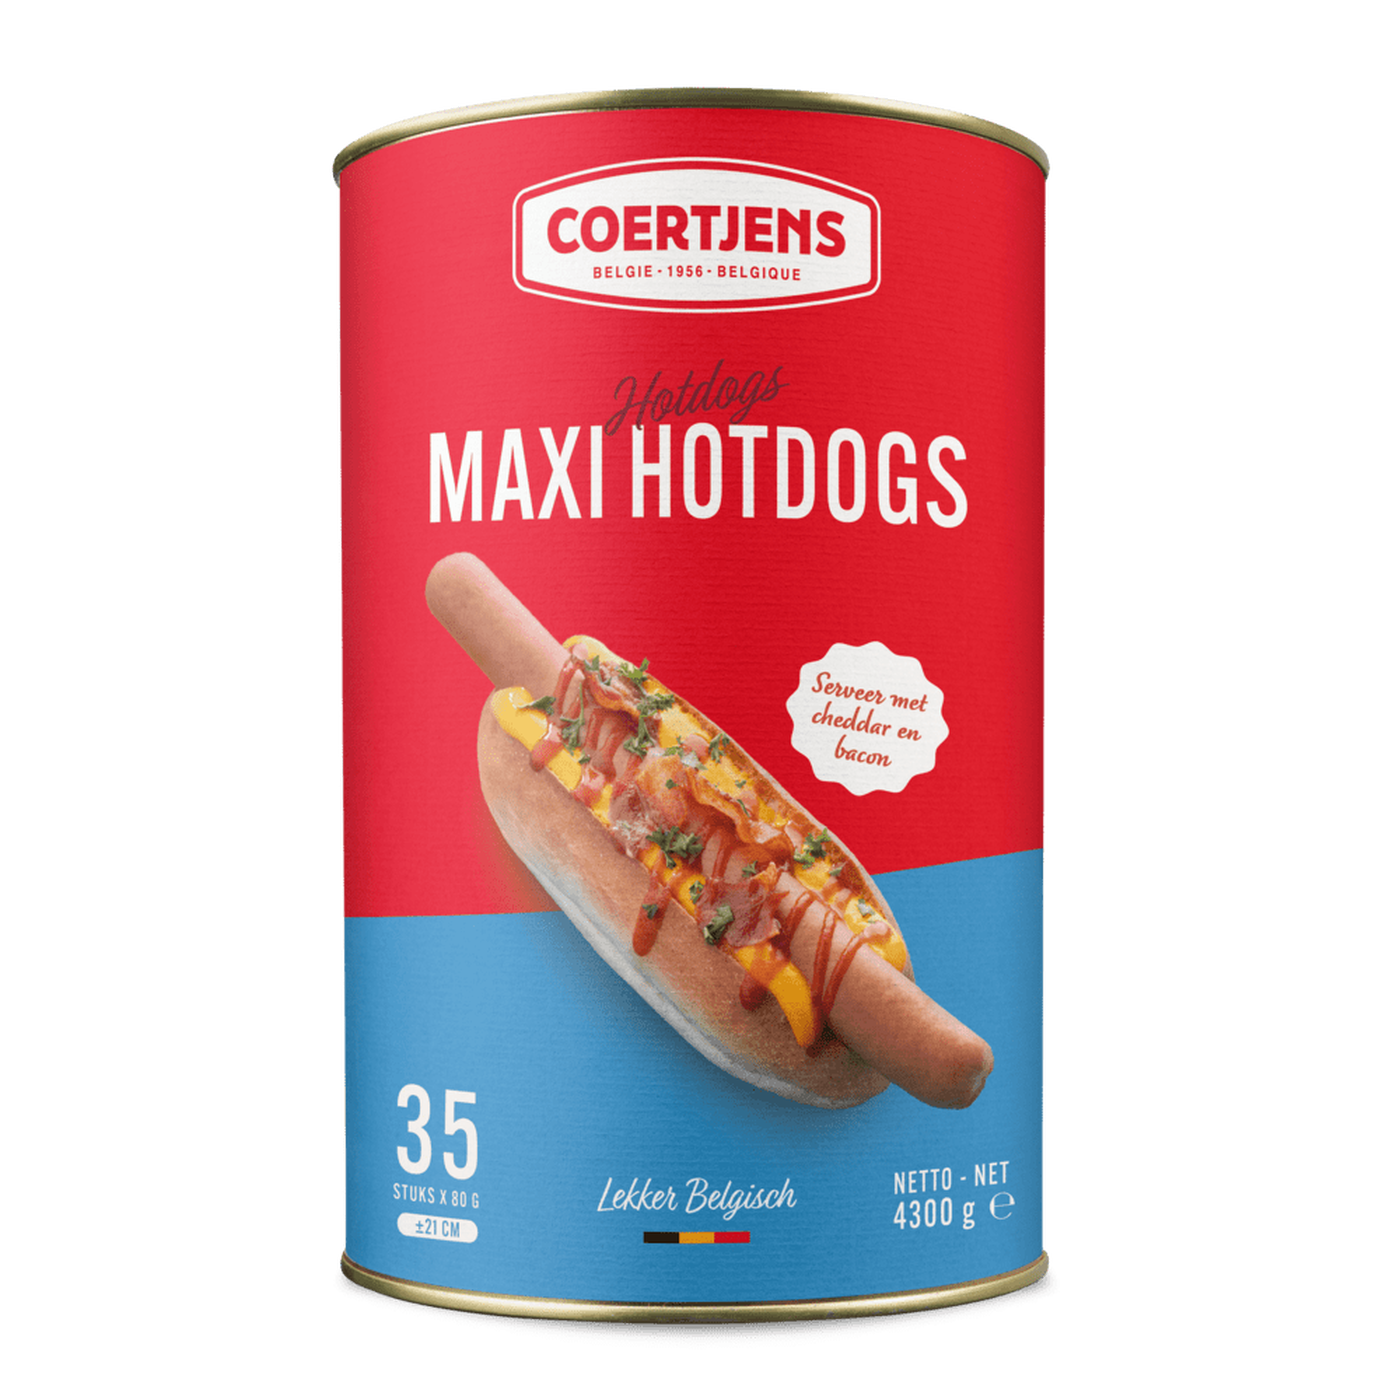 Maxi hotdogs